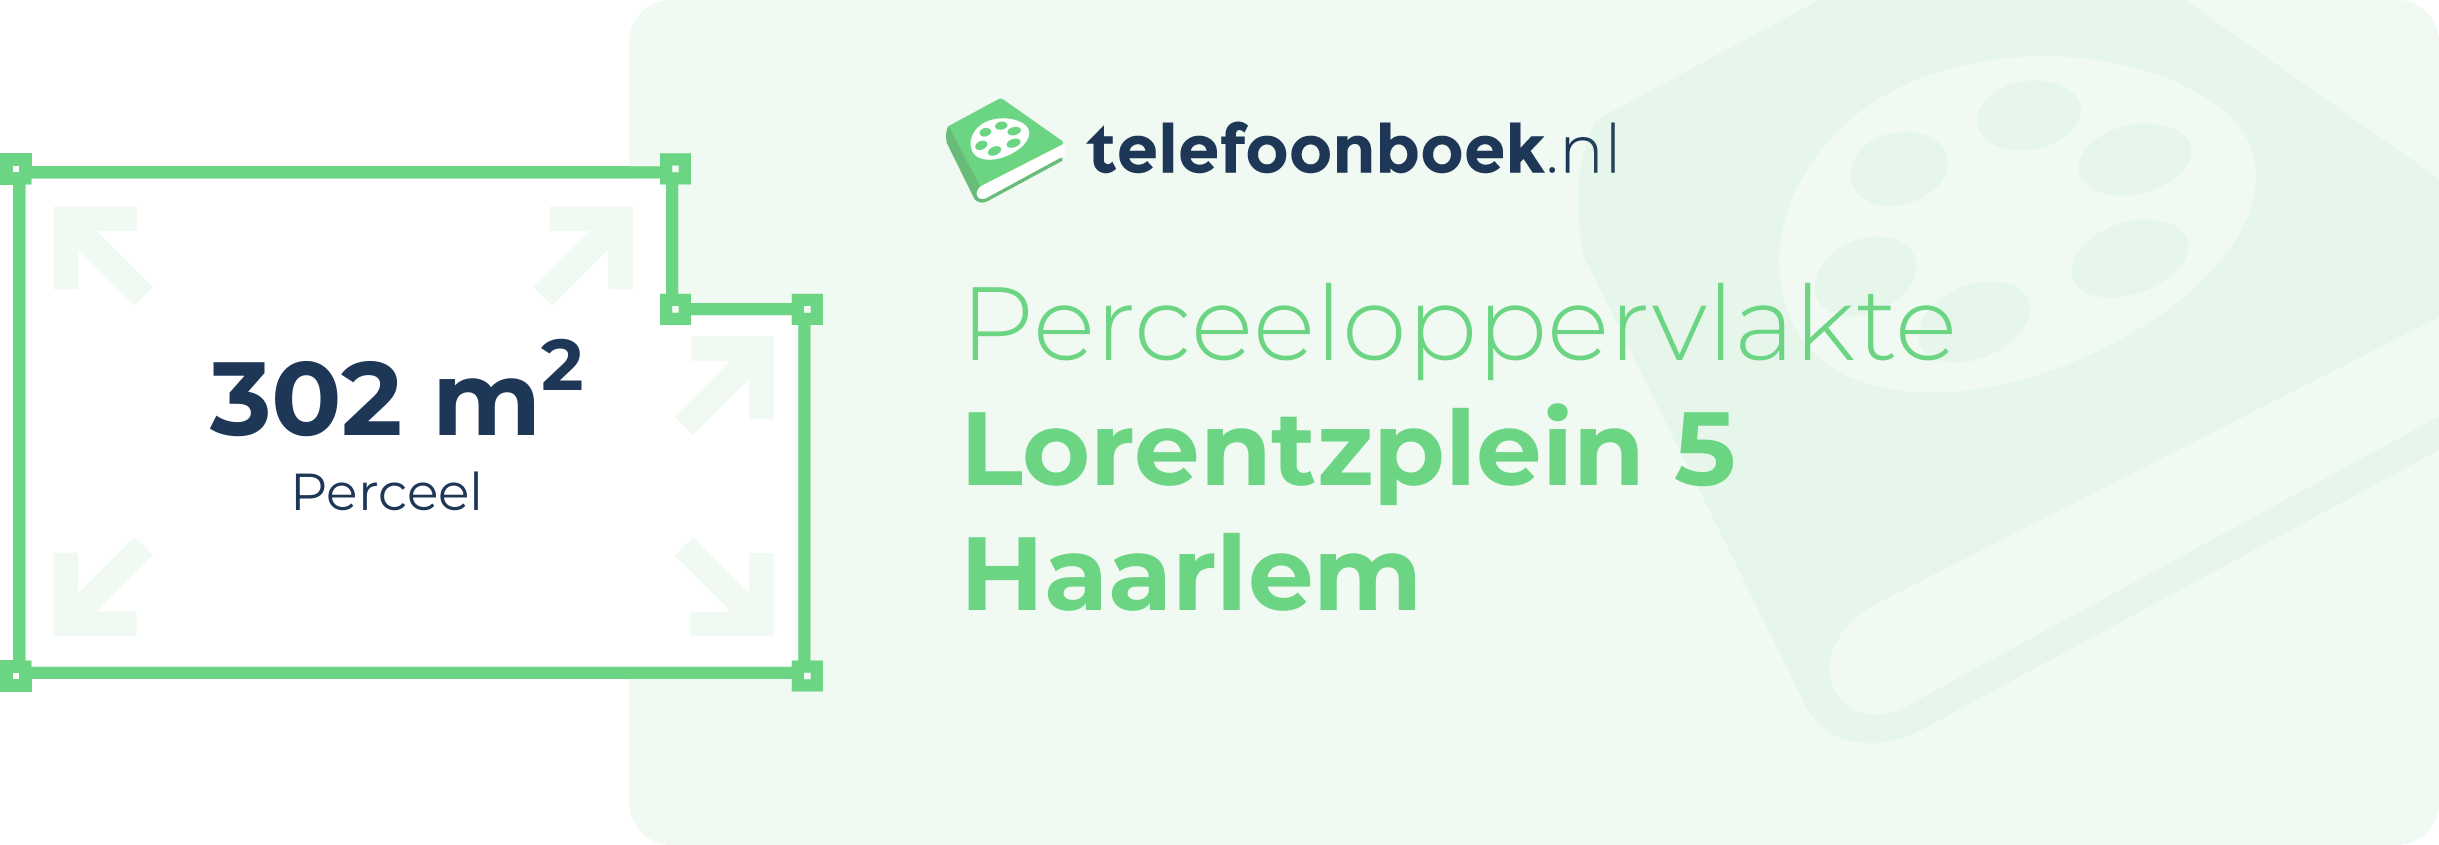 Perceeloppervlakte Lorentzplein 5 Haarlem